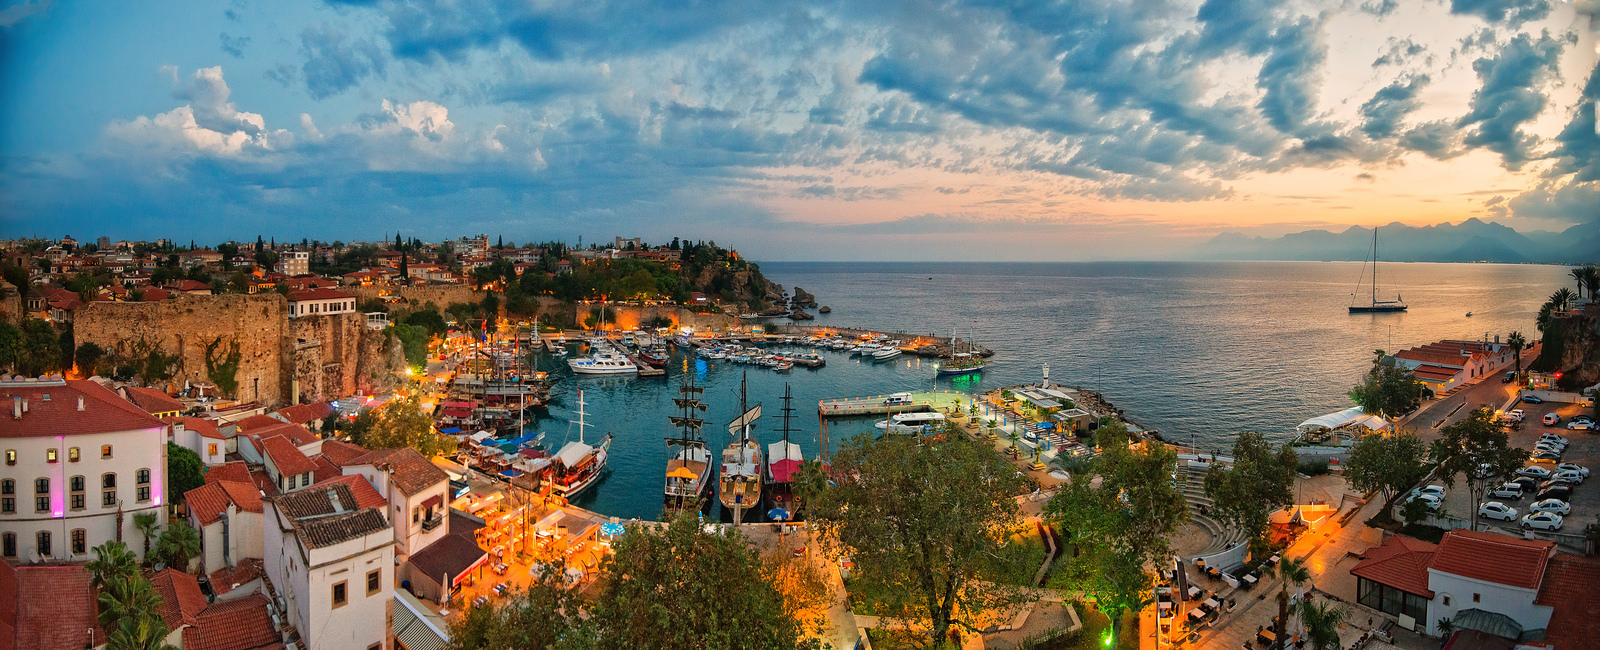 Türkiye'nin ilk online tur rezervasyon acentası ; Vigo Tours'a hoş geldiniz!